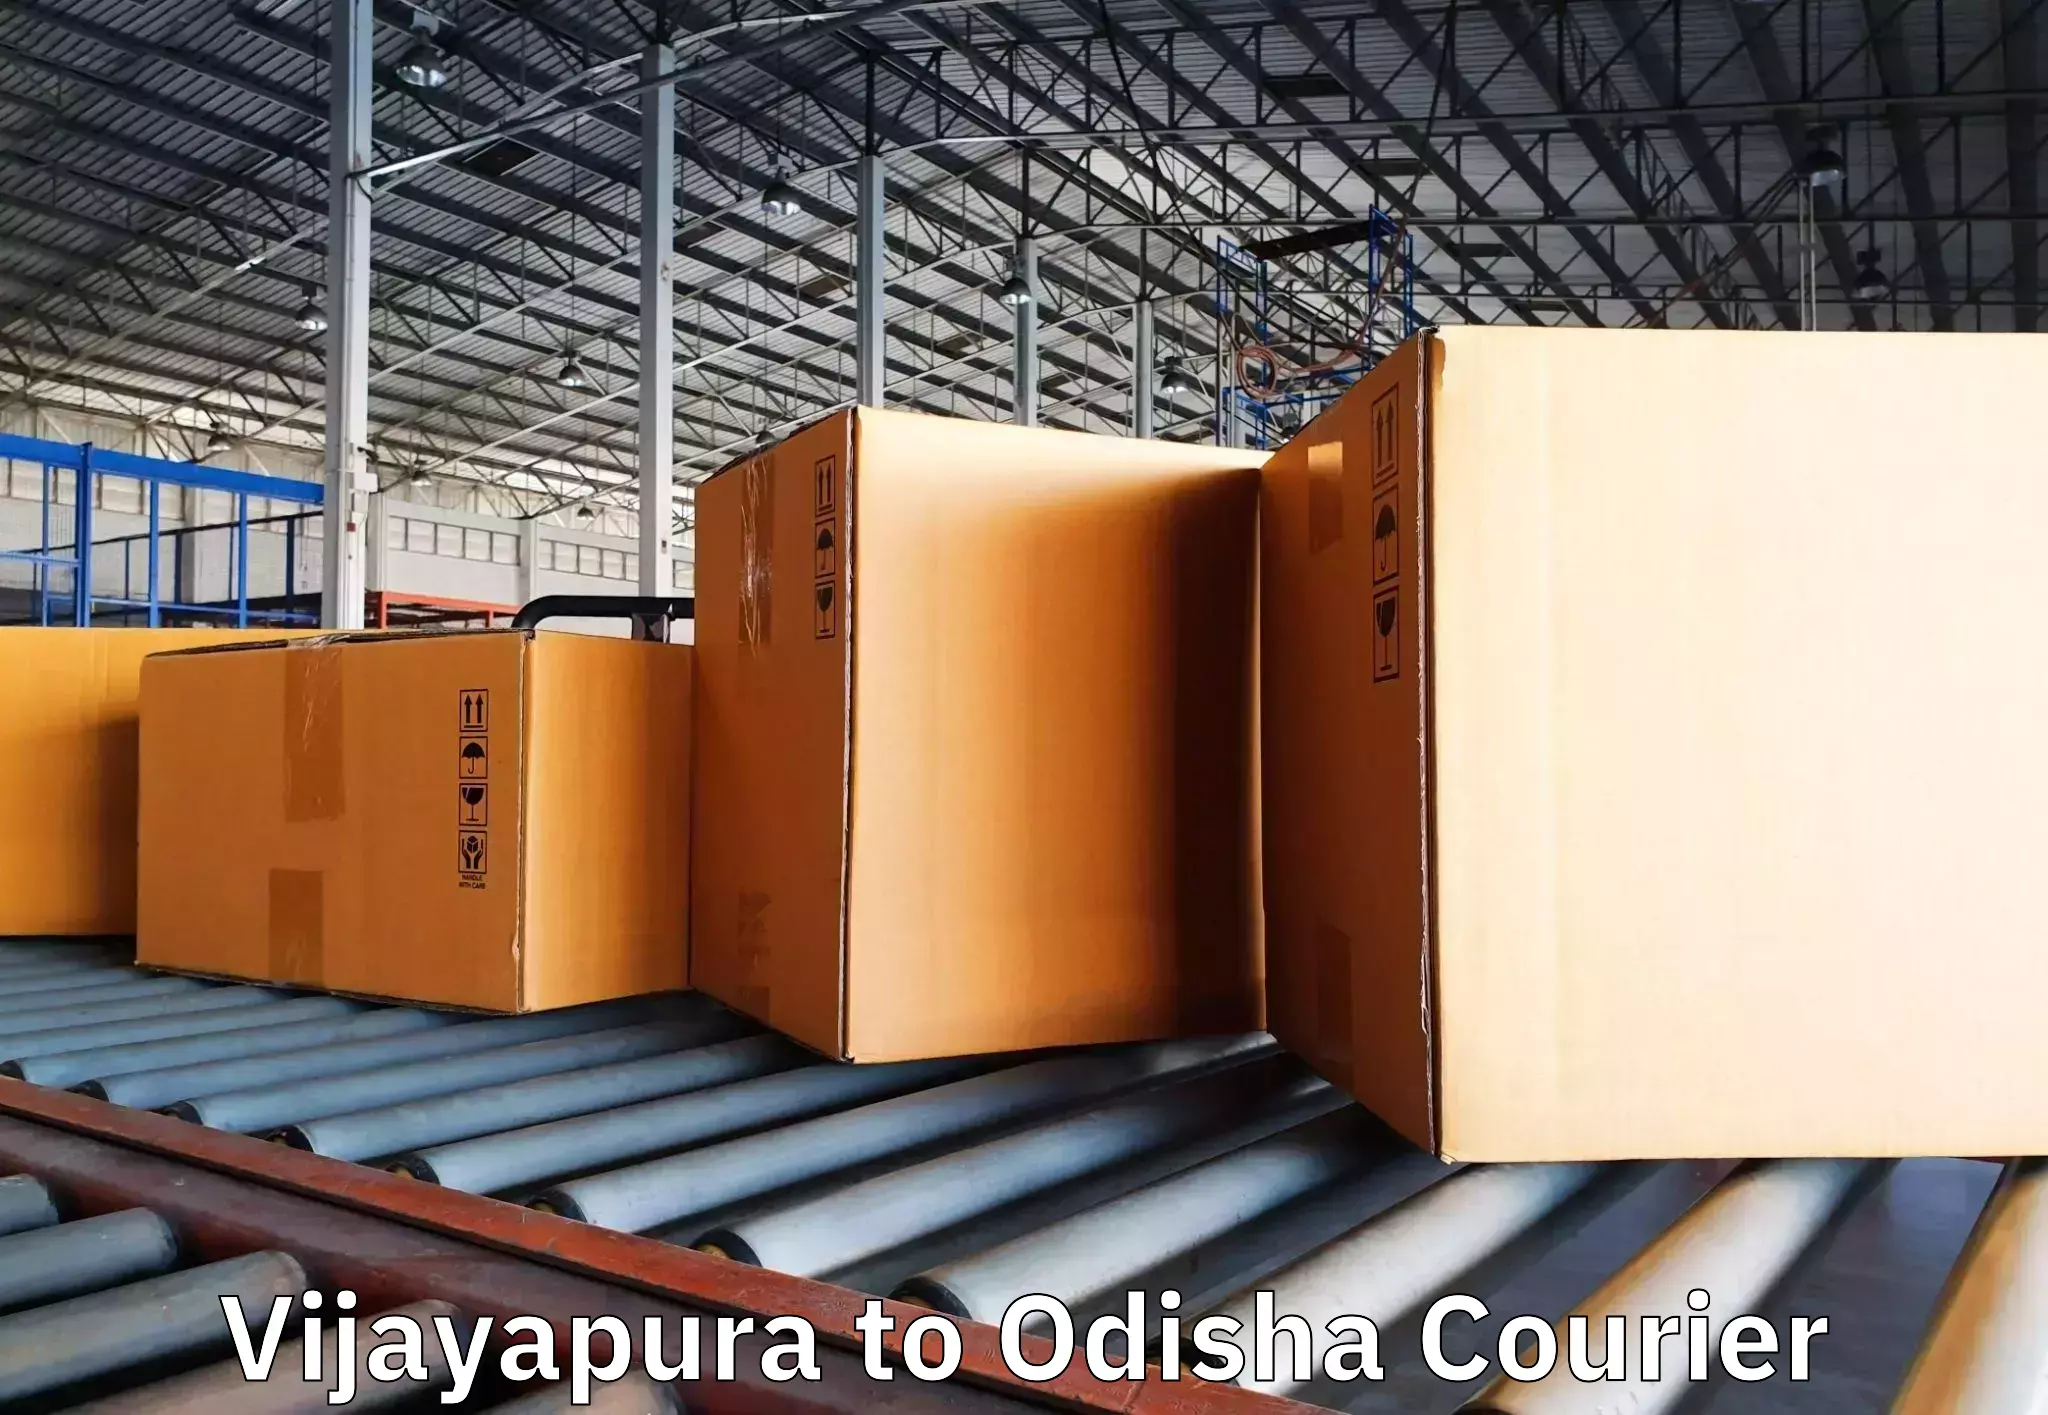 Furniture delivery service Vijayapura to Rayagada